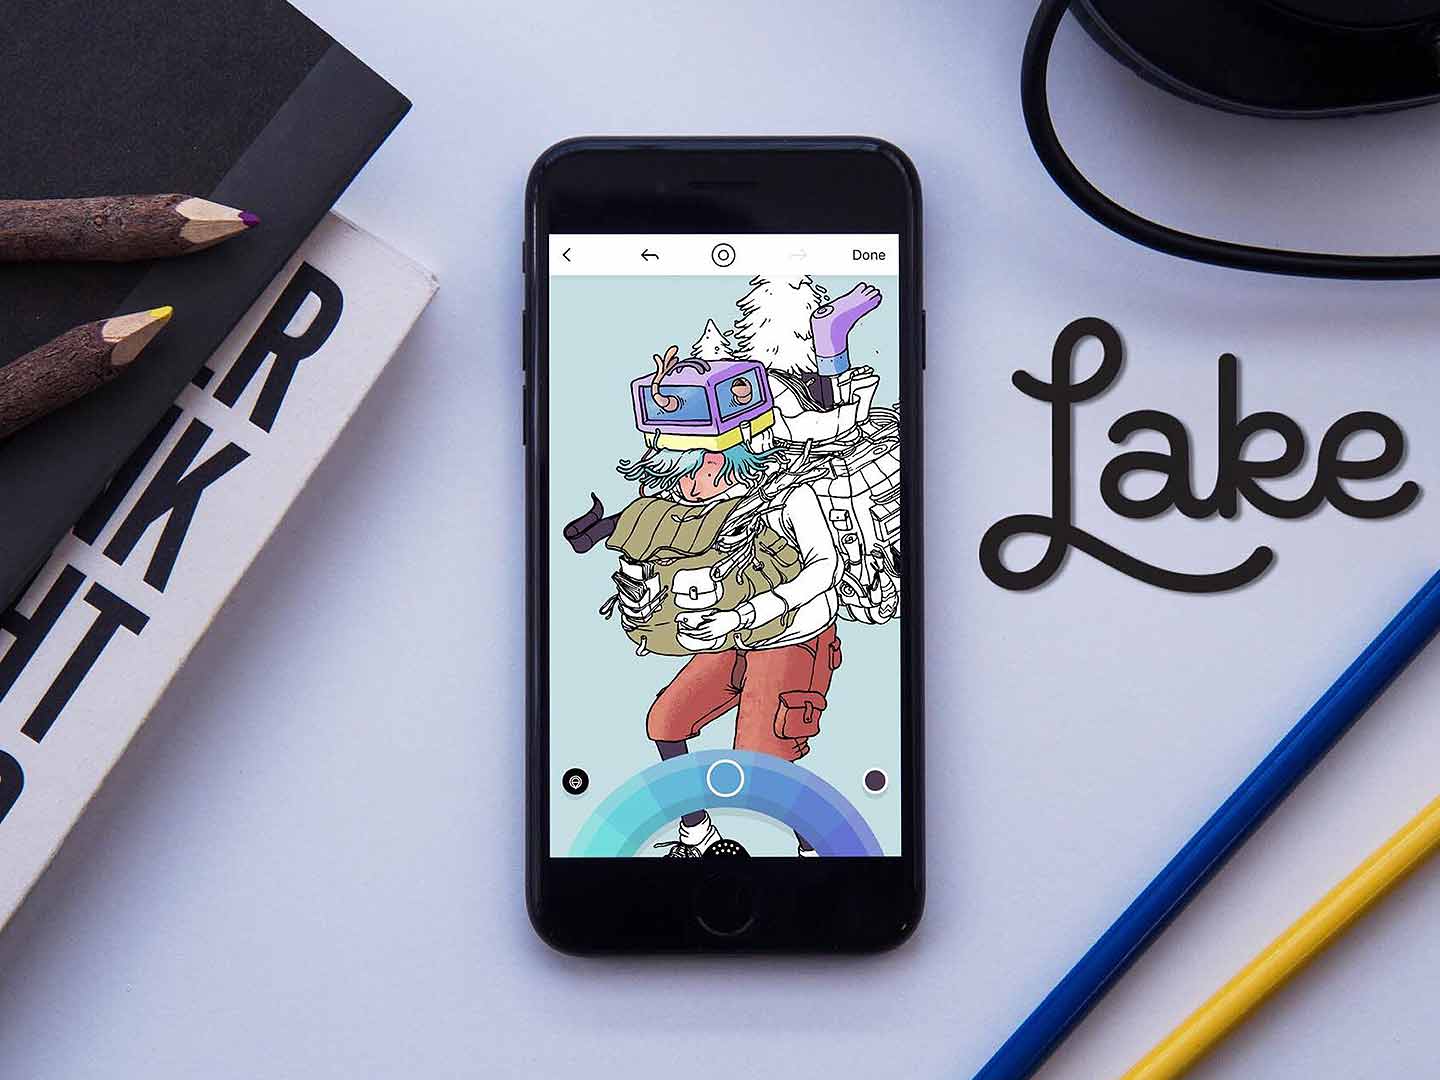 Lake coloring es la mejor app para relajarse pintando en iOS